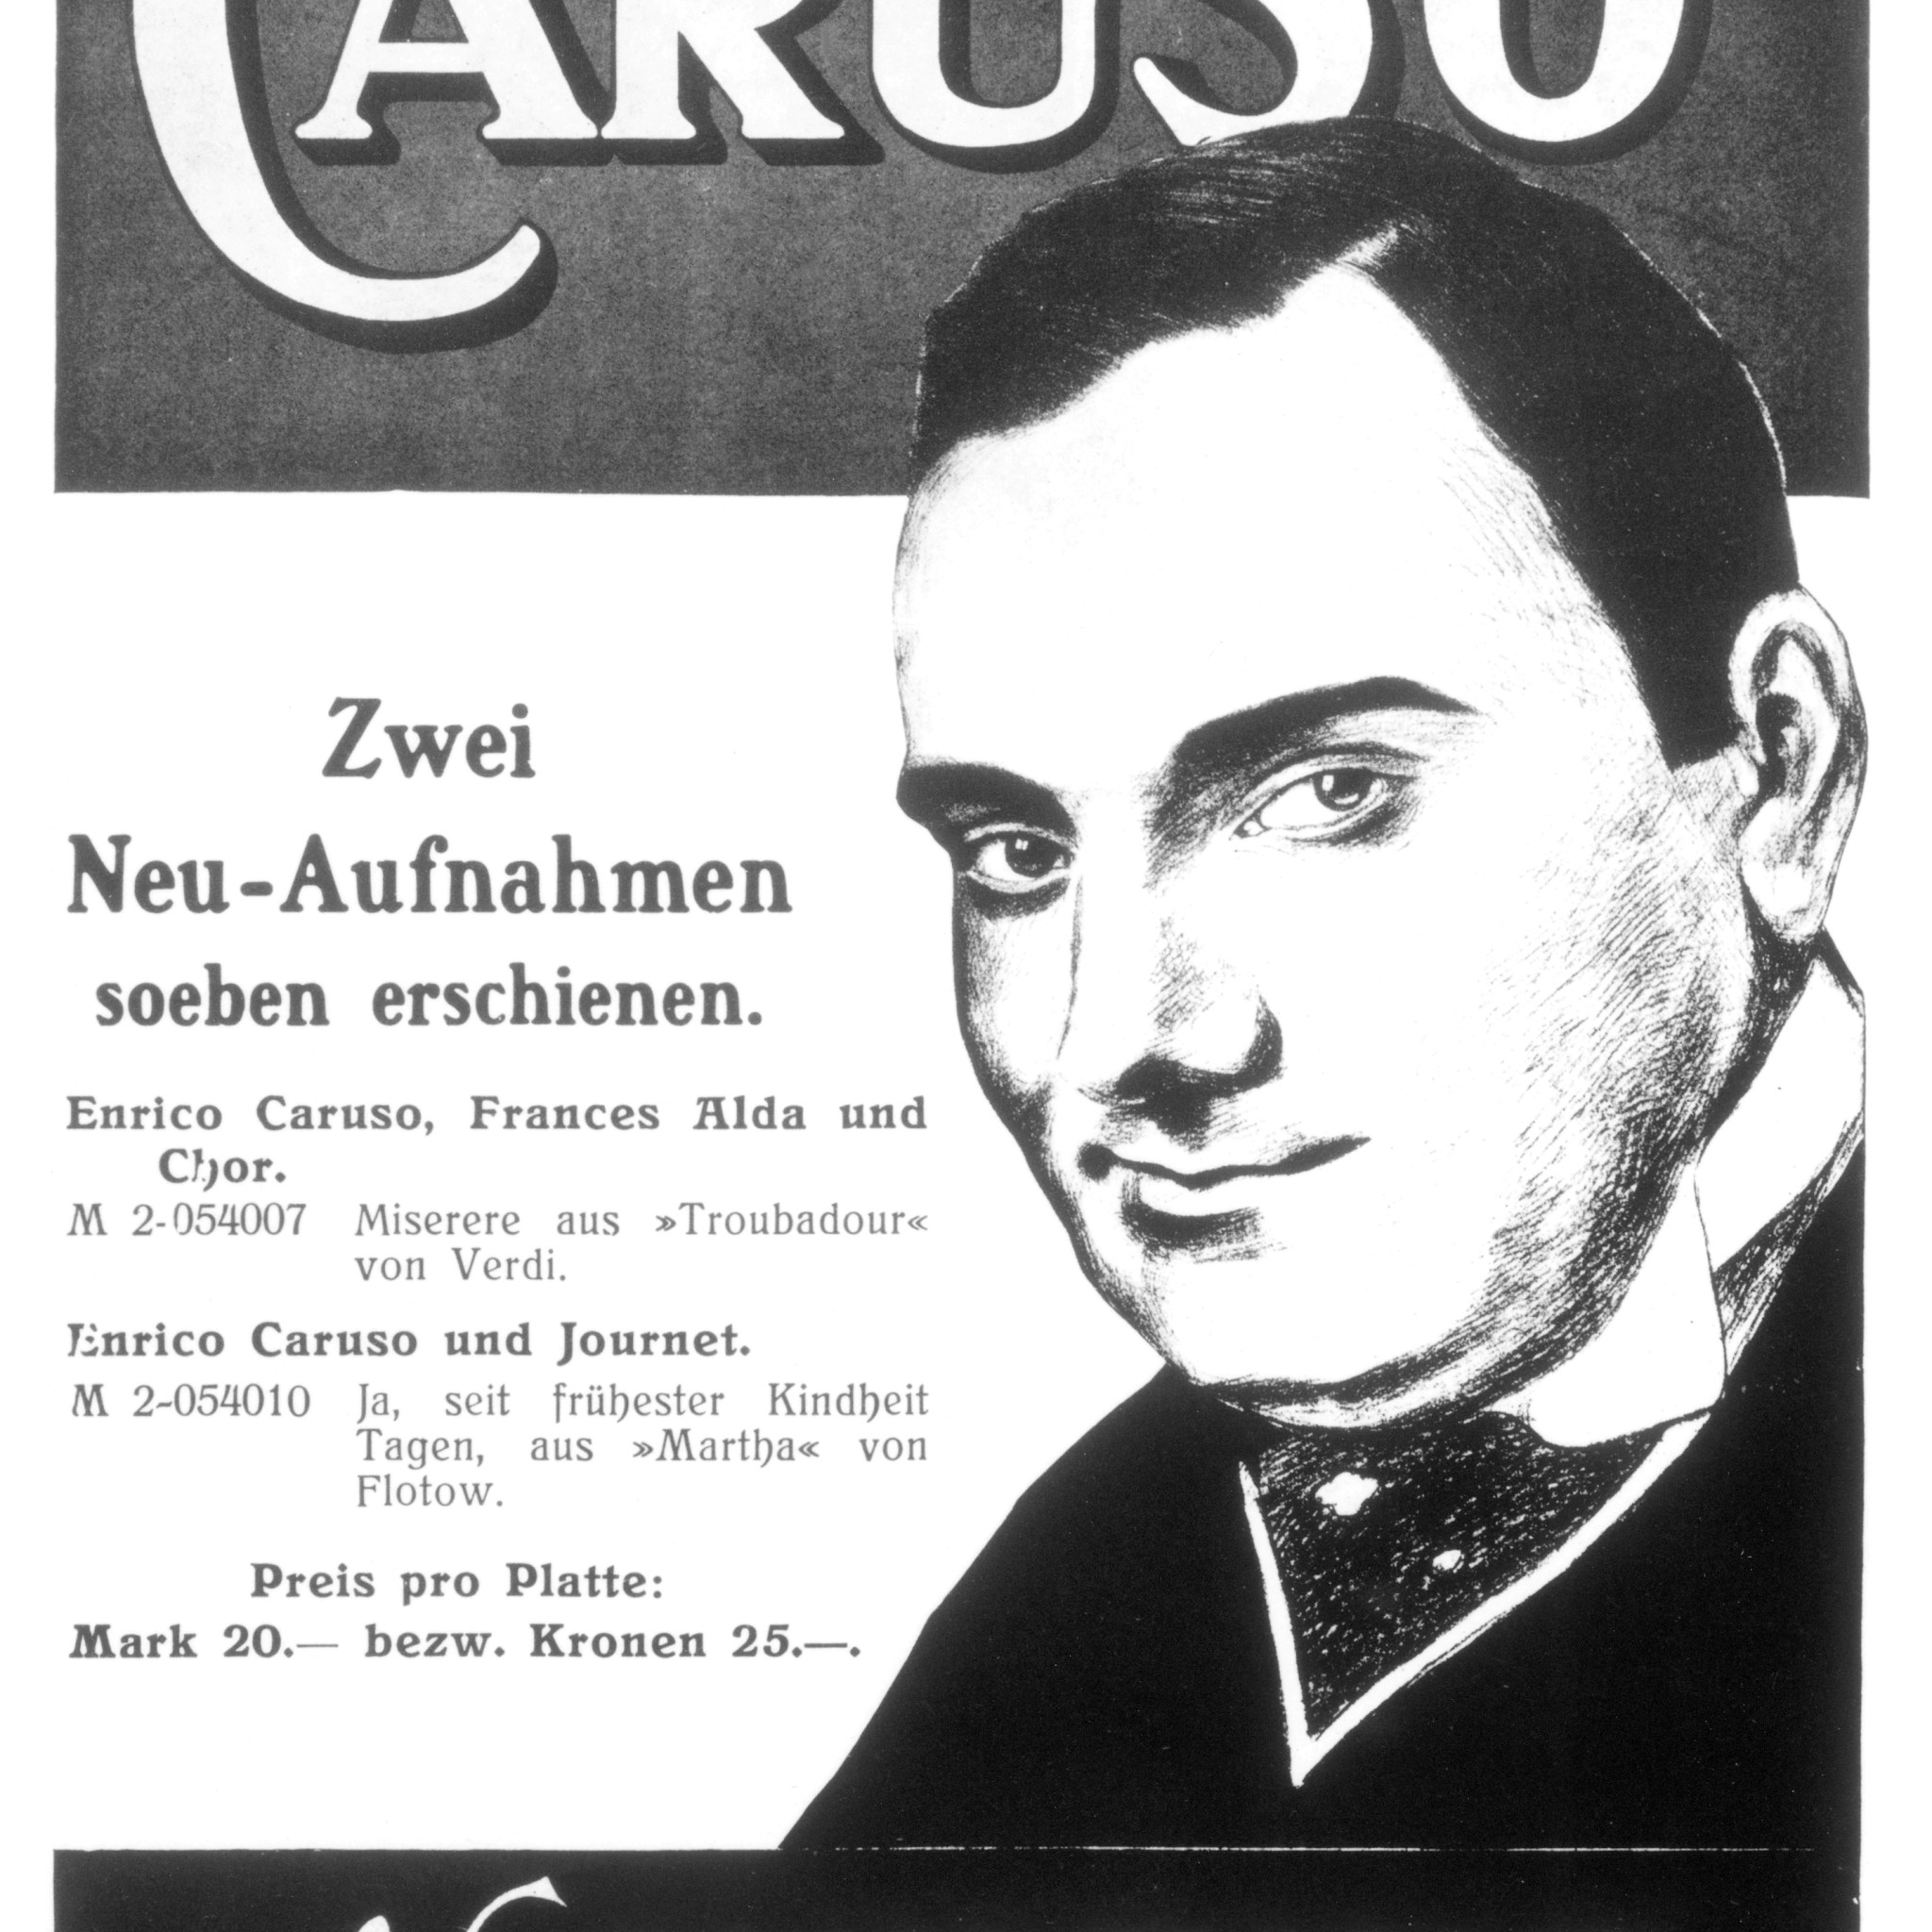 Caruso Werbung © DG Photo Archiv